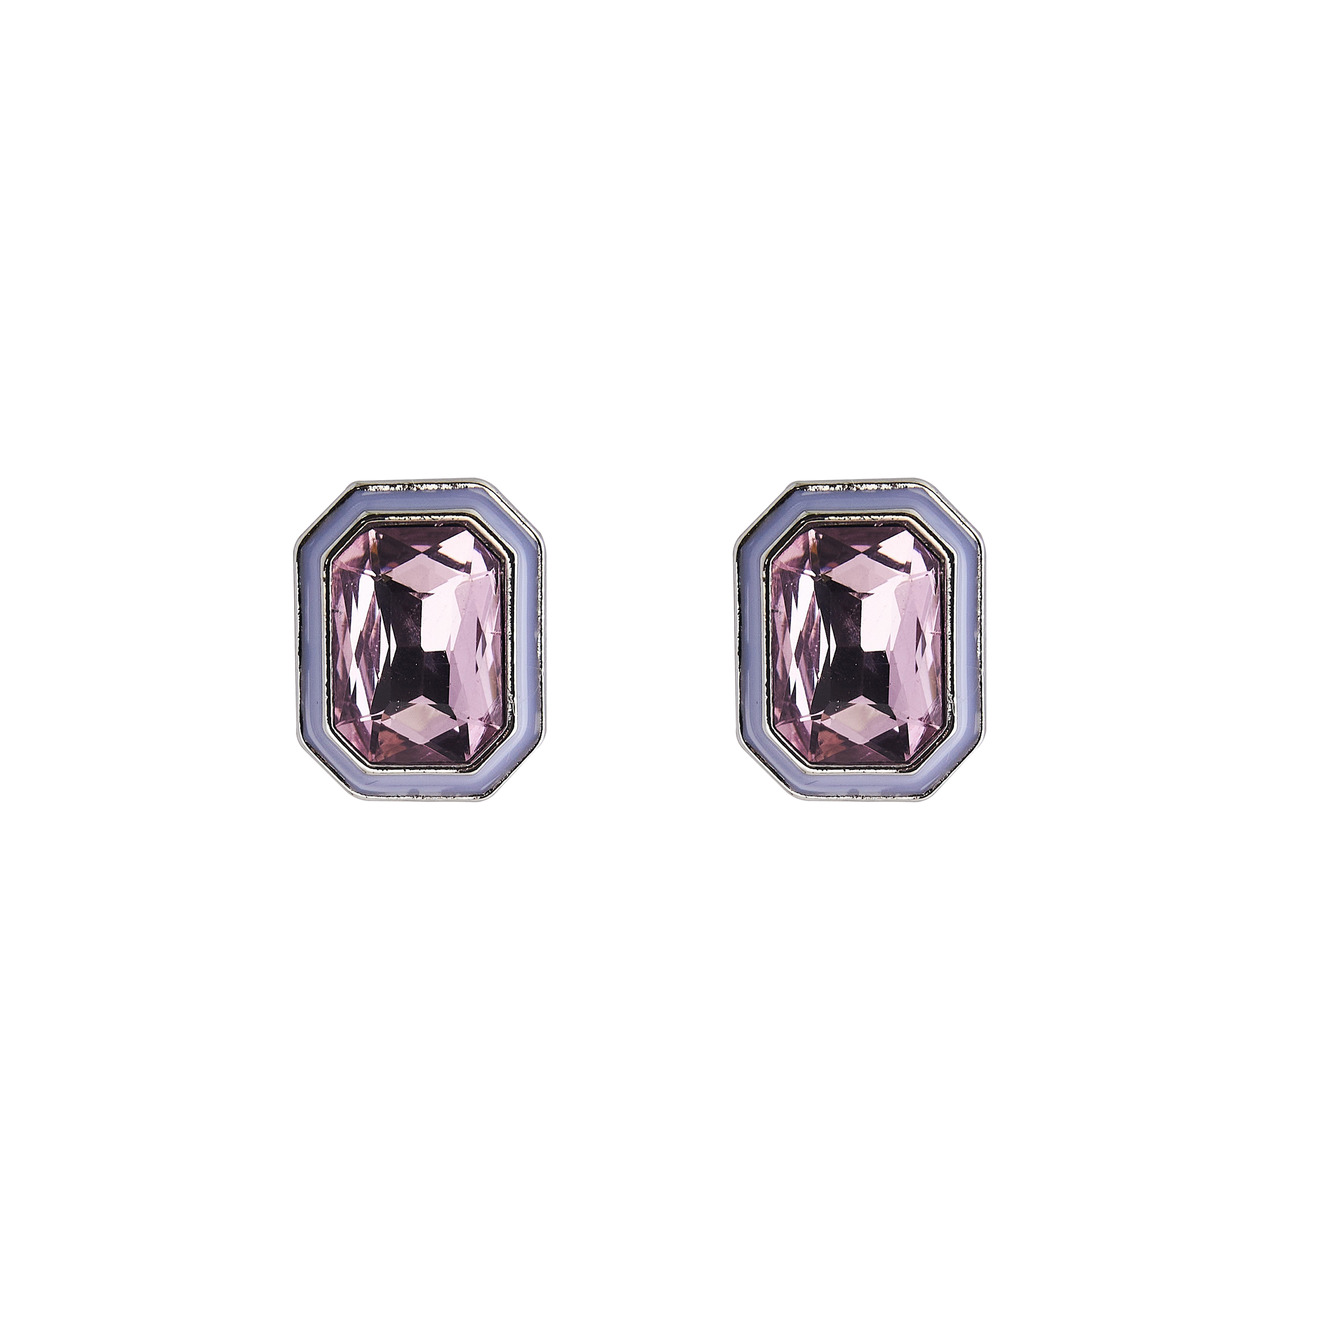 Herald Percy Серебристые серьги с розовыми кристаллами и белой эмалью herald percy двойные серьги с овальными розовыми кристаллами